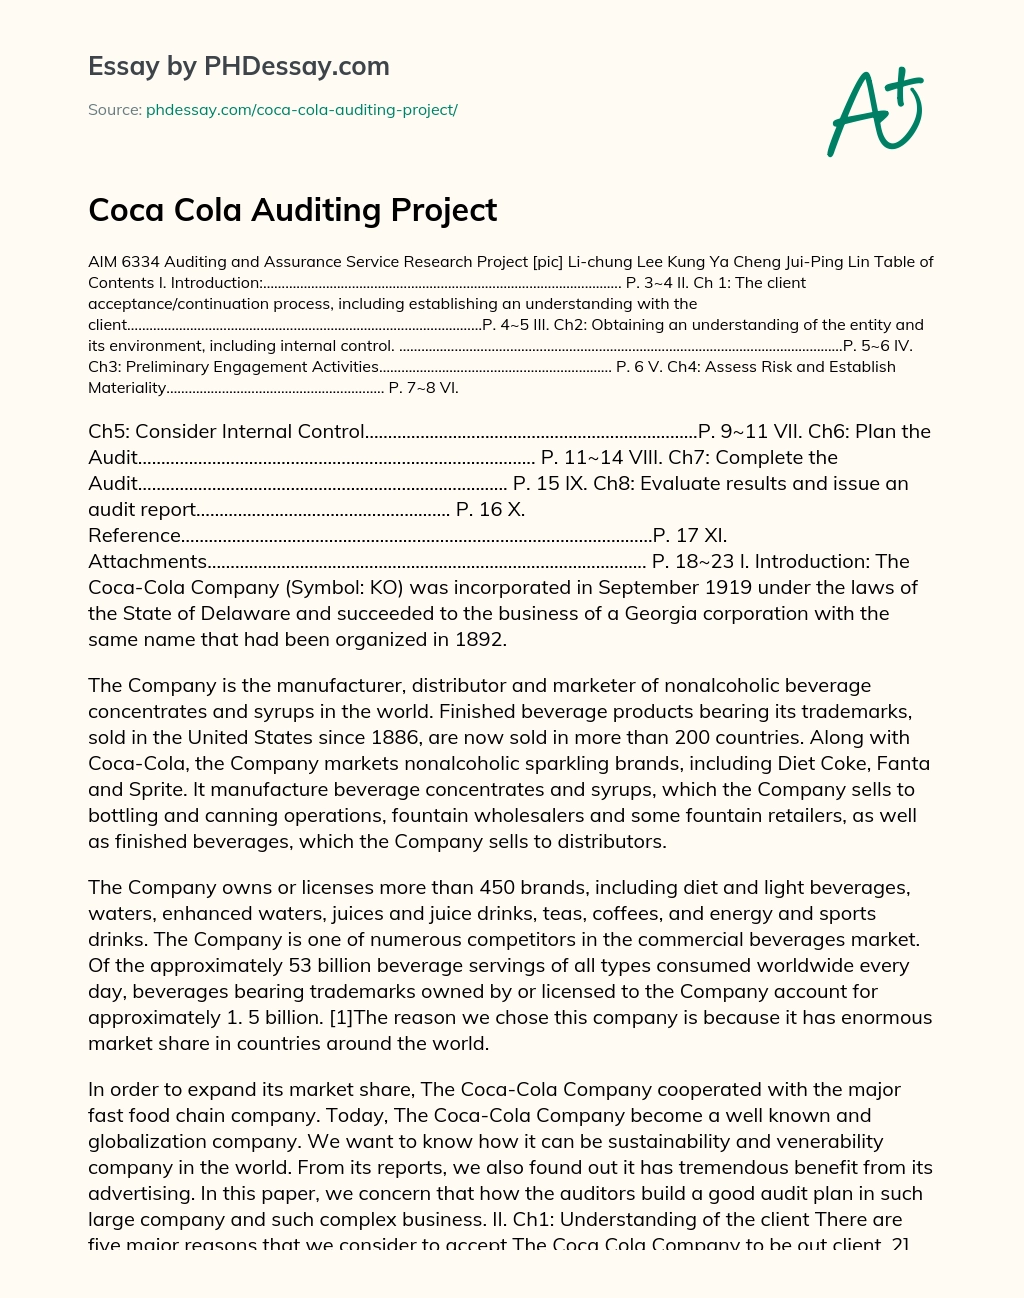 Coca Cola Auditing Project essay